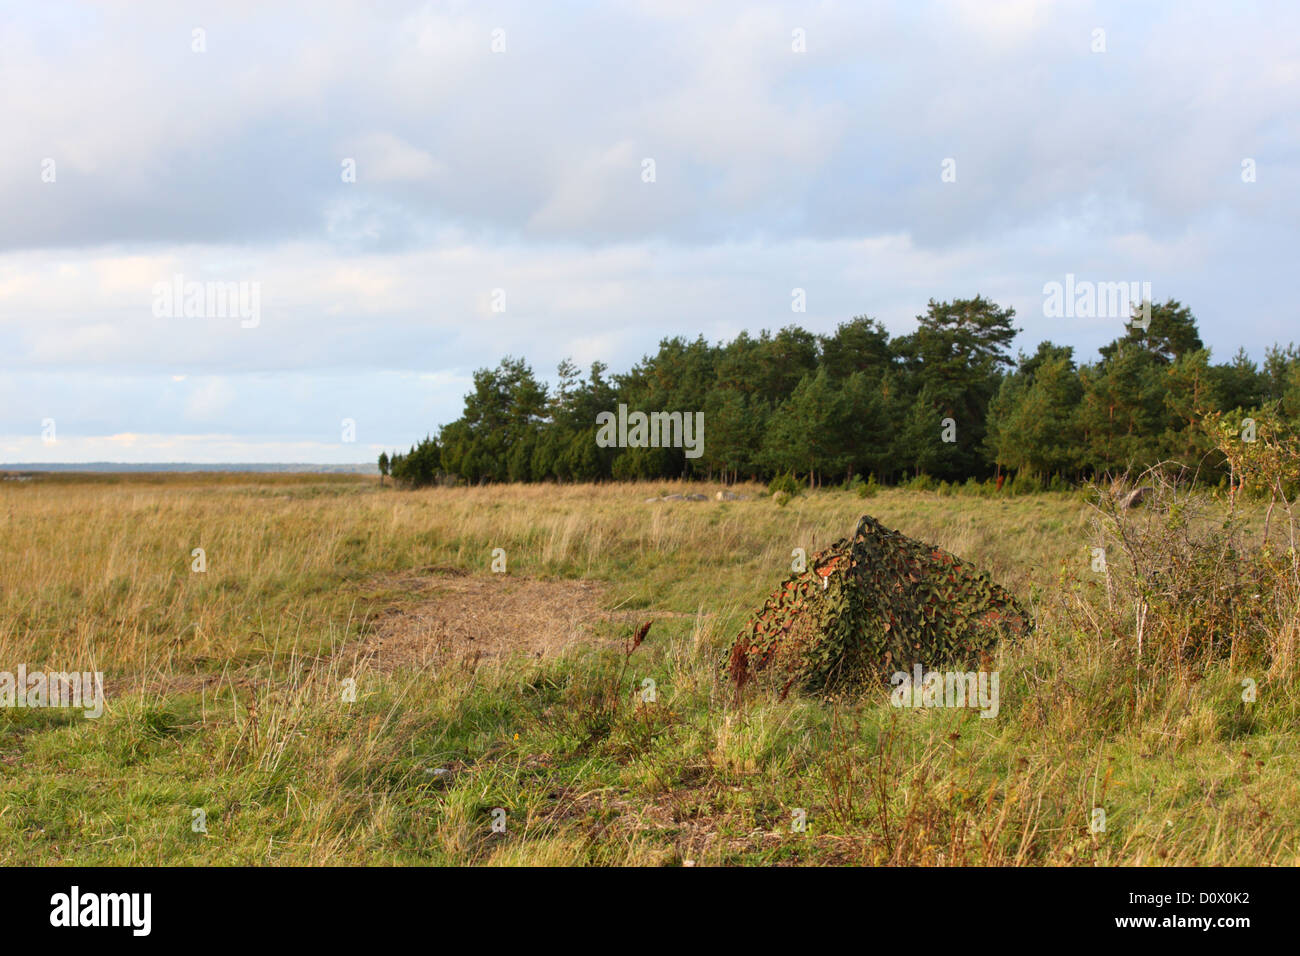 Ocultar fotográfica cubiertos con red de camuflaje, listo para la caza de aves y mamíferos. Europa, Estonia Foto de stock